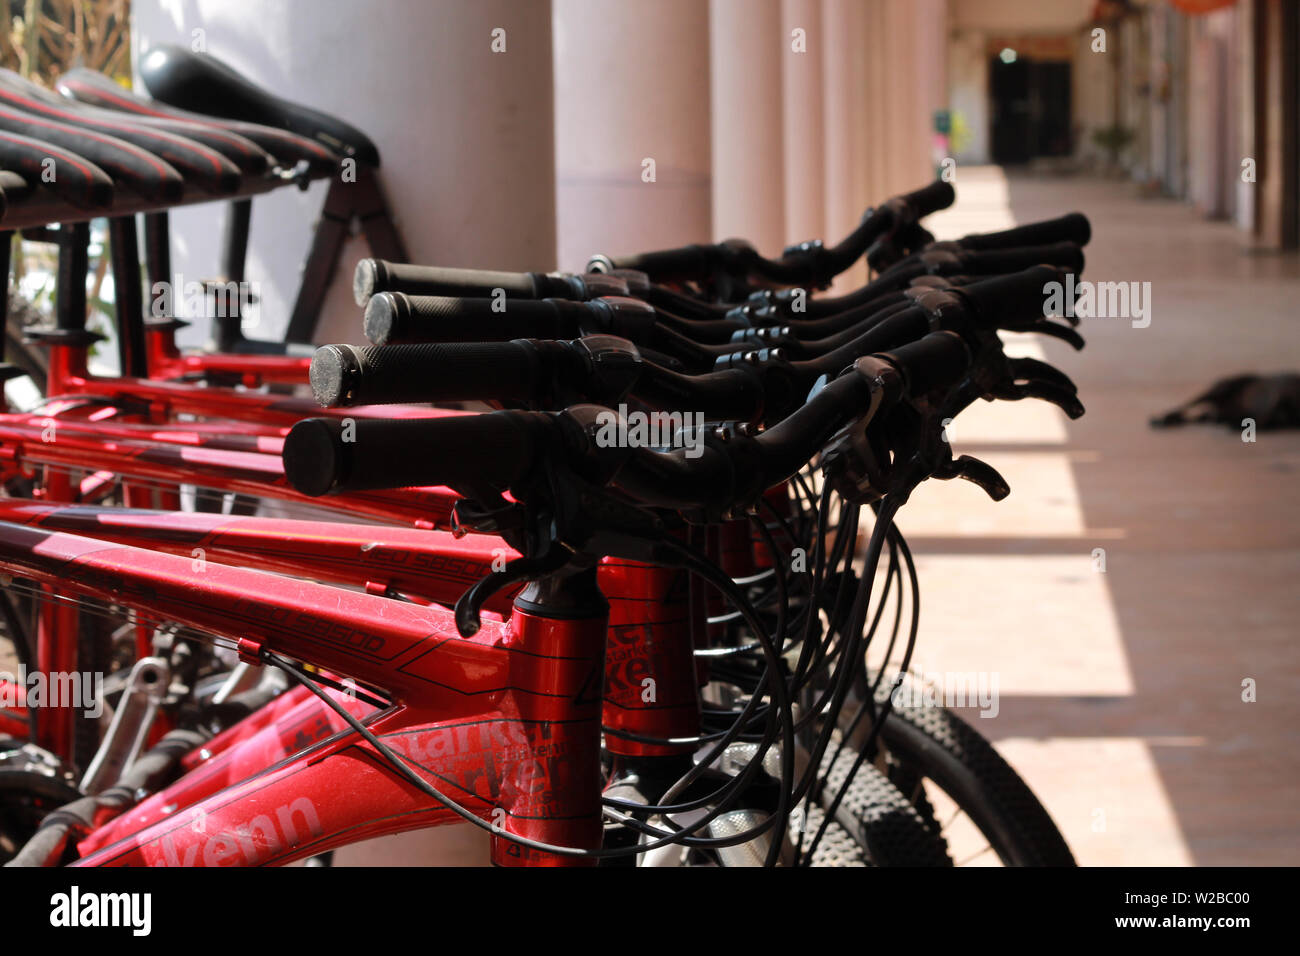 De nombreux nouveaux couleur rouge marque géant bicyclettes vendues à l'extérieur de la boutique à New Delhi Inde Banque D'Images